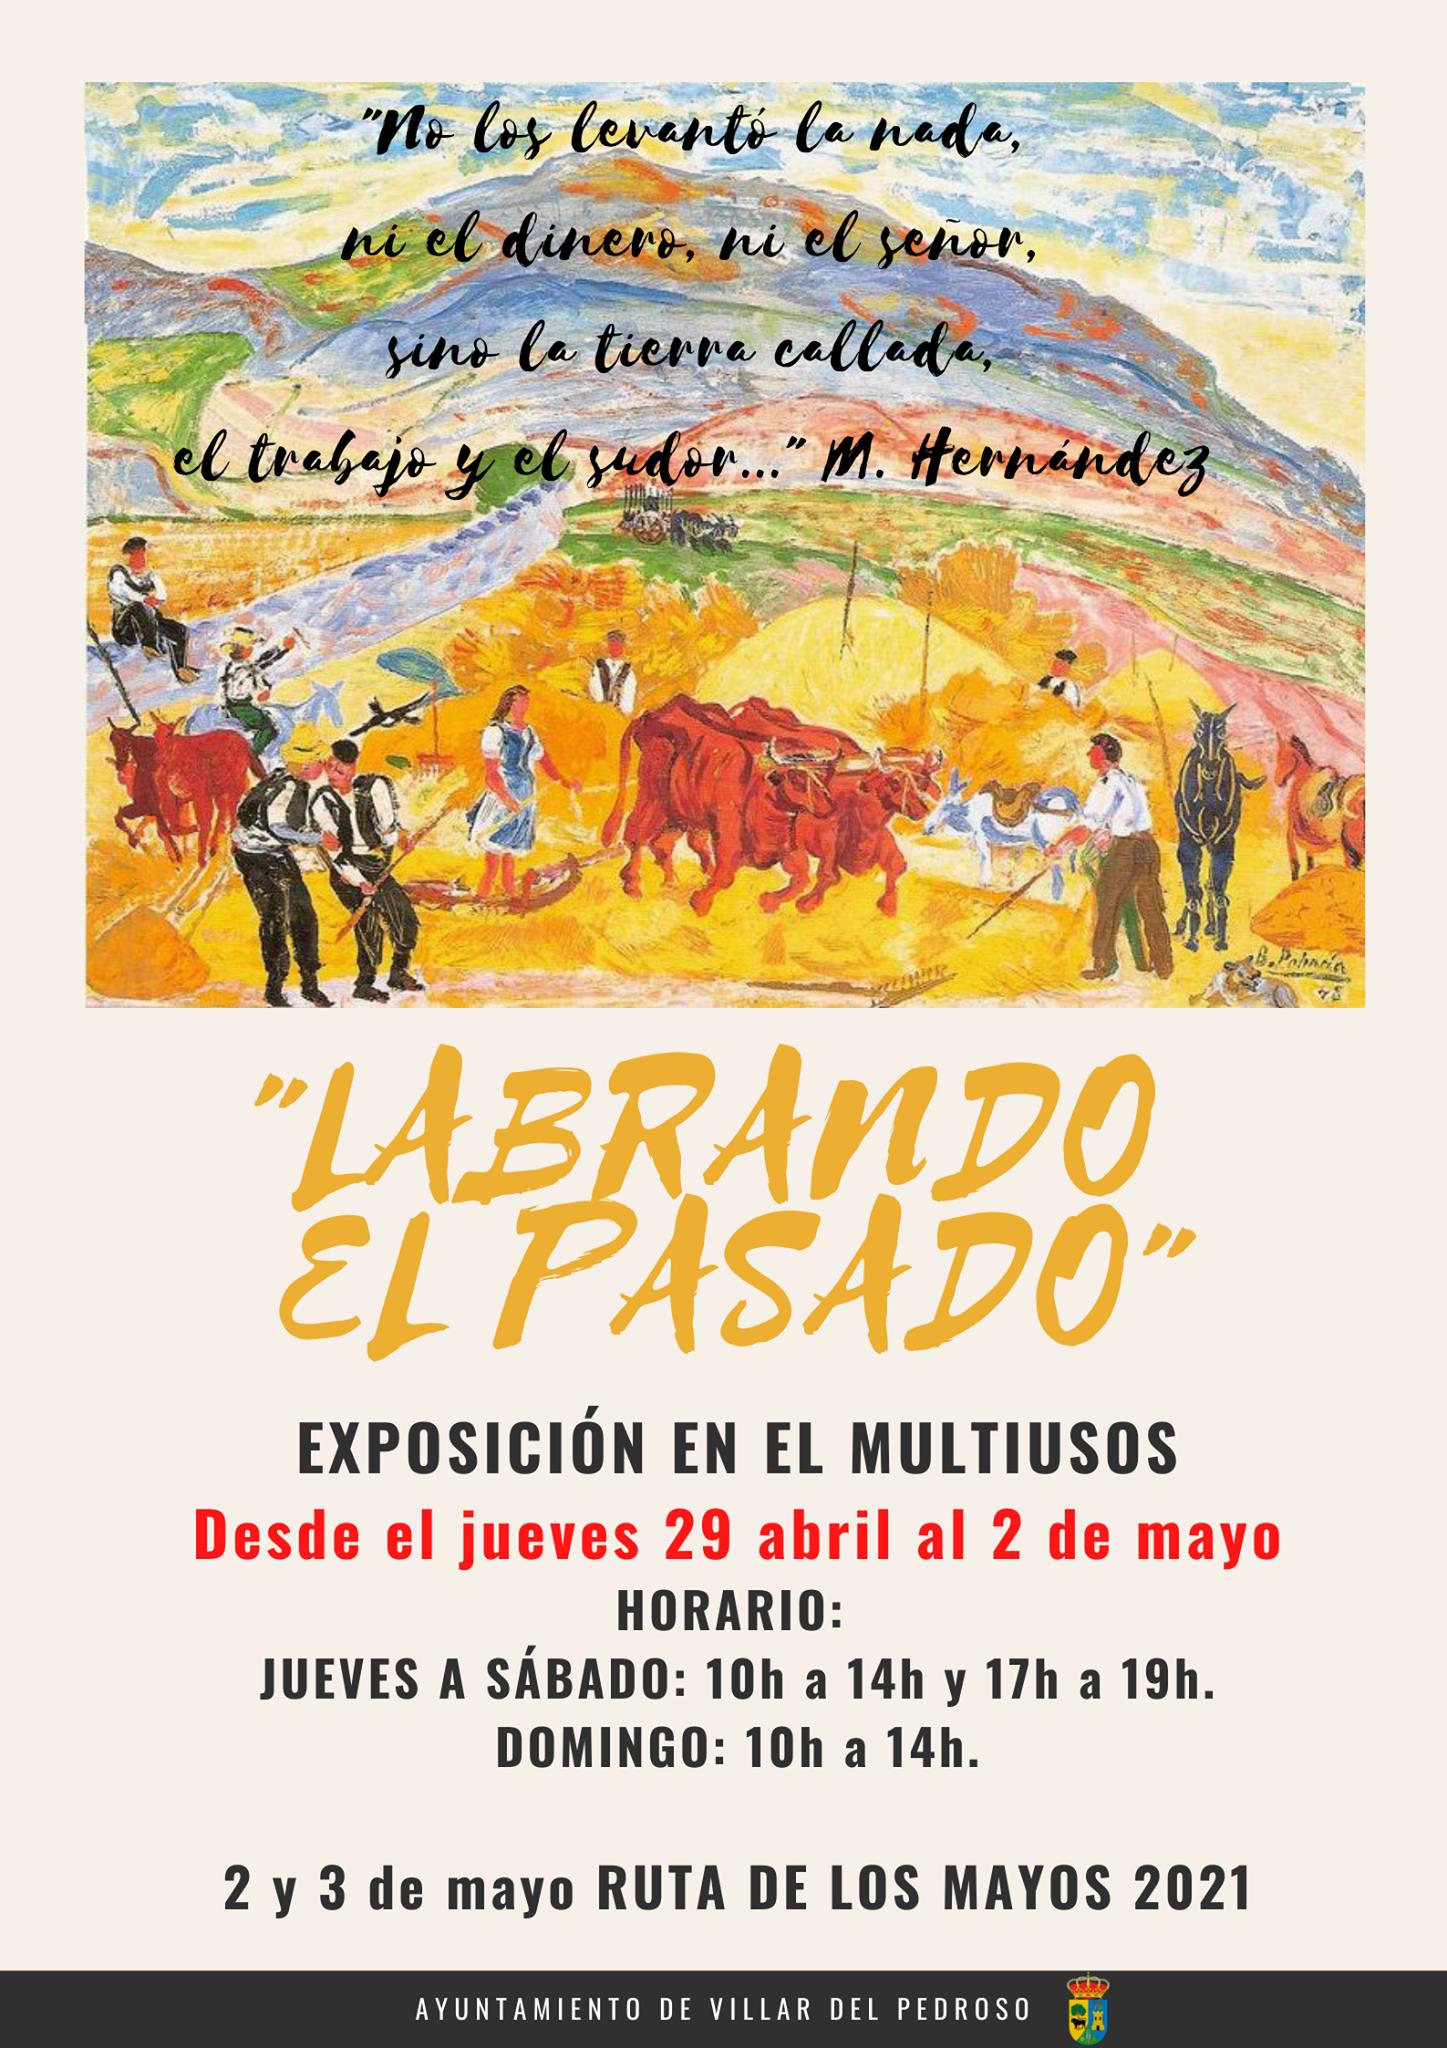 Exposición Labrando el pasado (2021) - Villar del Pedroso (Cáceres)